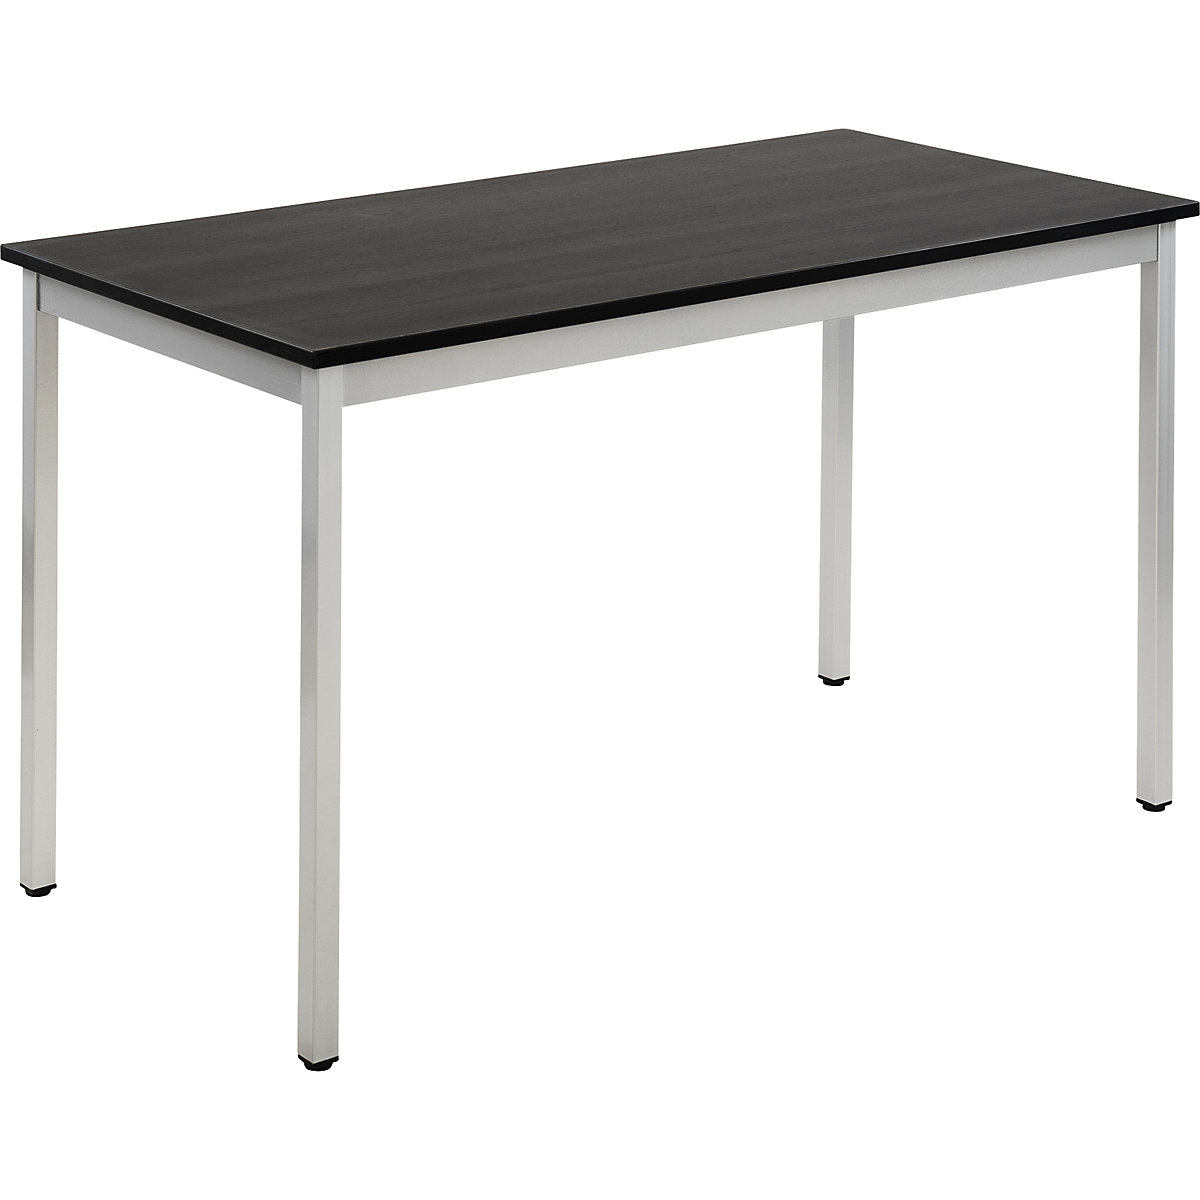 Univerzális asztal – eurokraft basic, négyszög alakú, szé x ma 1200 x 740 mm, mélység 600 mm, sötétszürke kőris-dekor lap, fehéralumínium váz-17